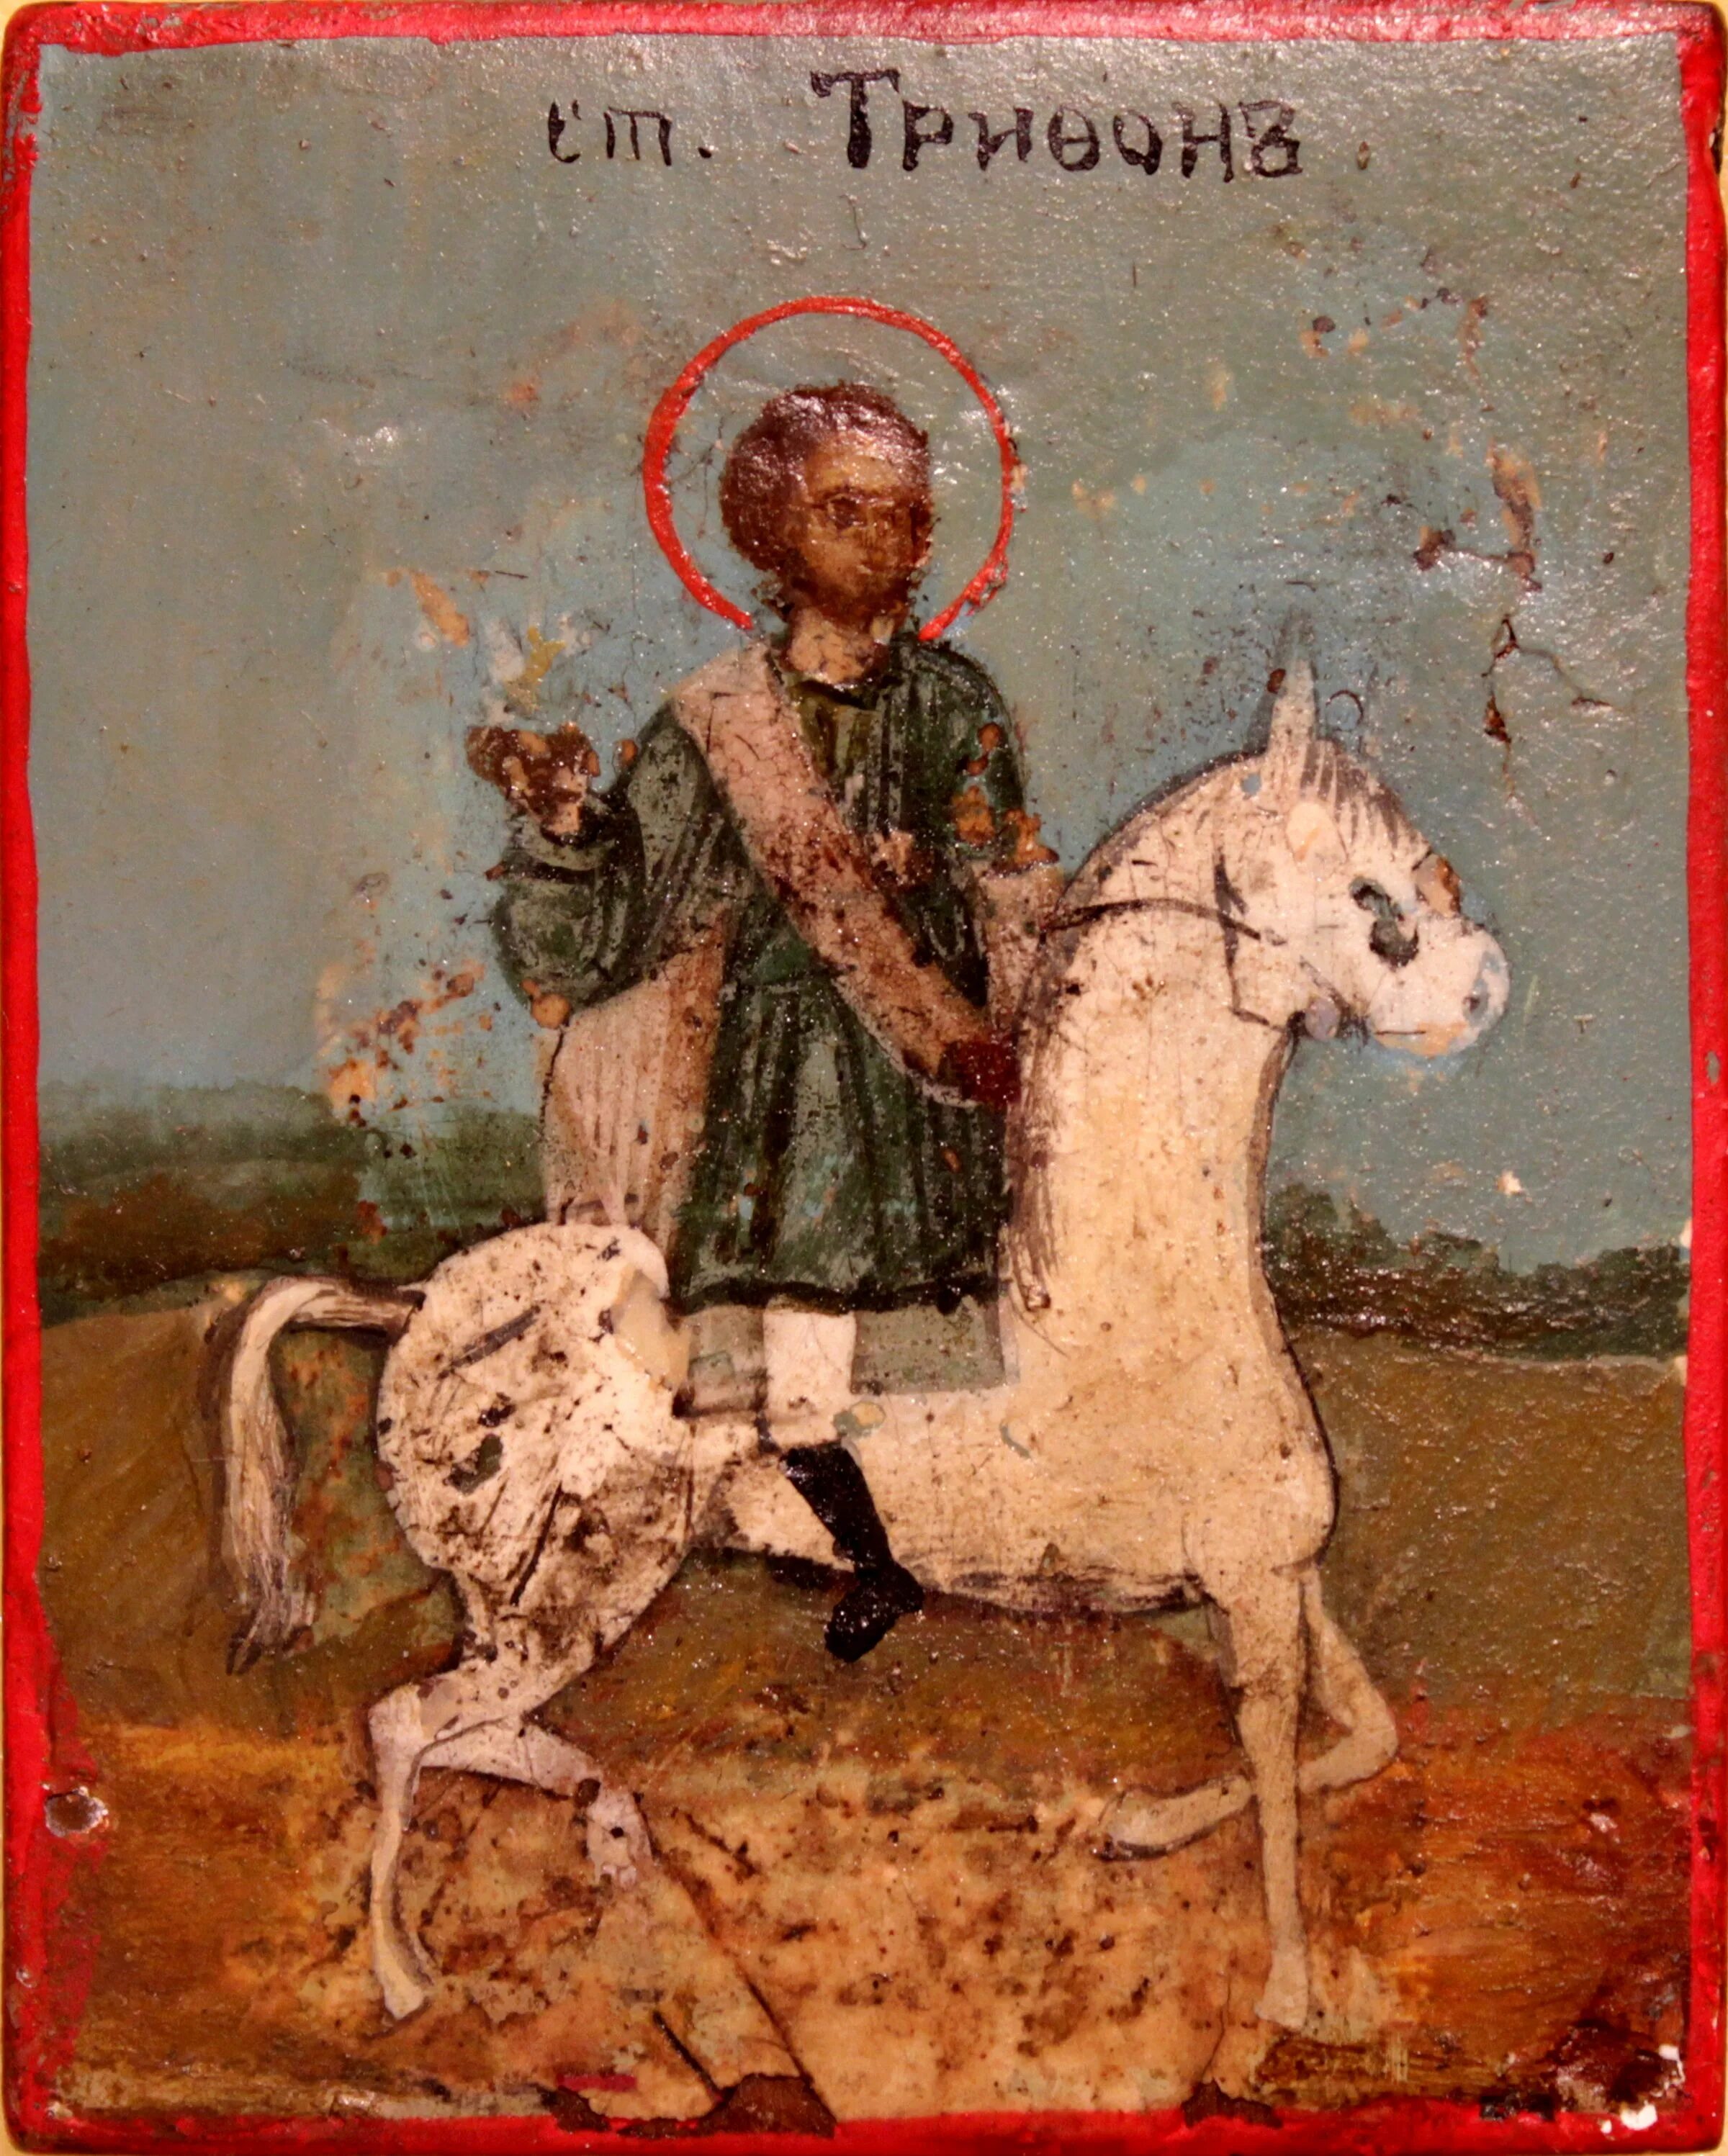 14 февраля святого трифона покровителя охотников. Икона Святого Трифона покровителя охотников.